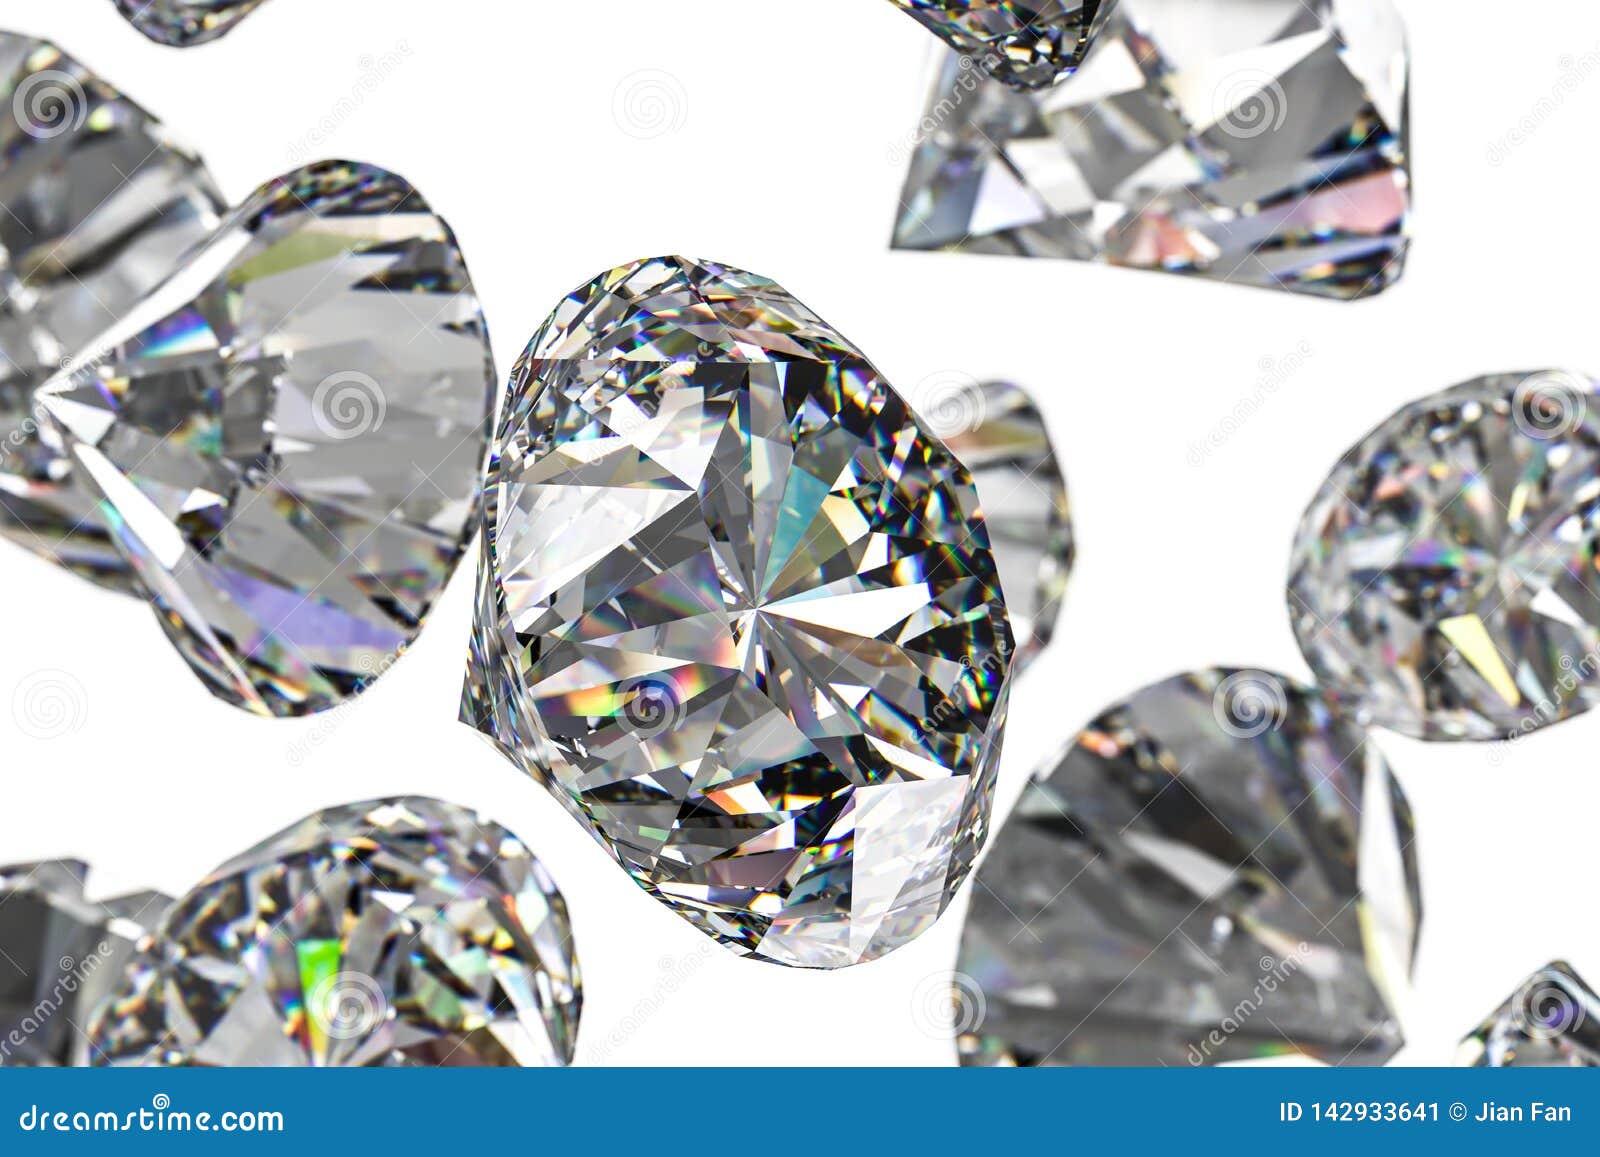 Viên ngọc kim cương cao cấp tỏa sáng lấp lánh và trang trọng, gắn kết sự sang trọng và nghệ thuật bên trong. Tự tin và đẳng cấp, việc sử dụng viên ngọc kim cương cao cấp sẽ thực sự là một trải nghiệm đích thực cho những người yêu thích nghệ thuật và trang sức.